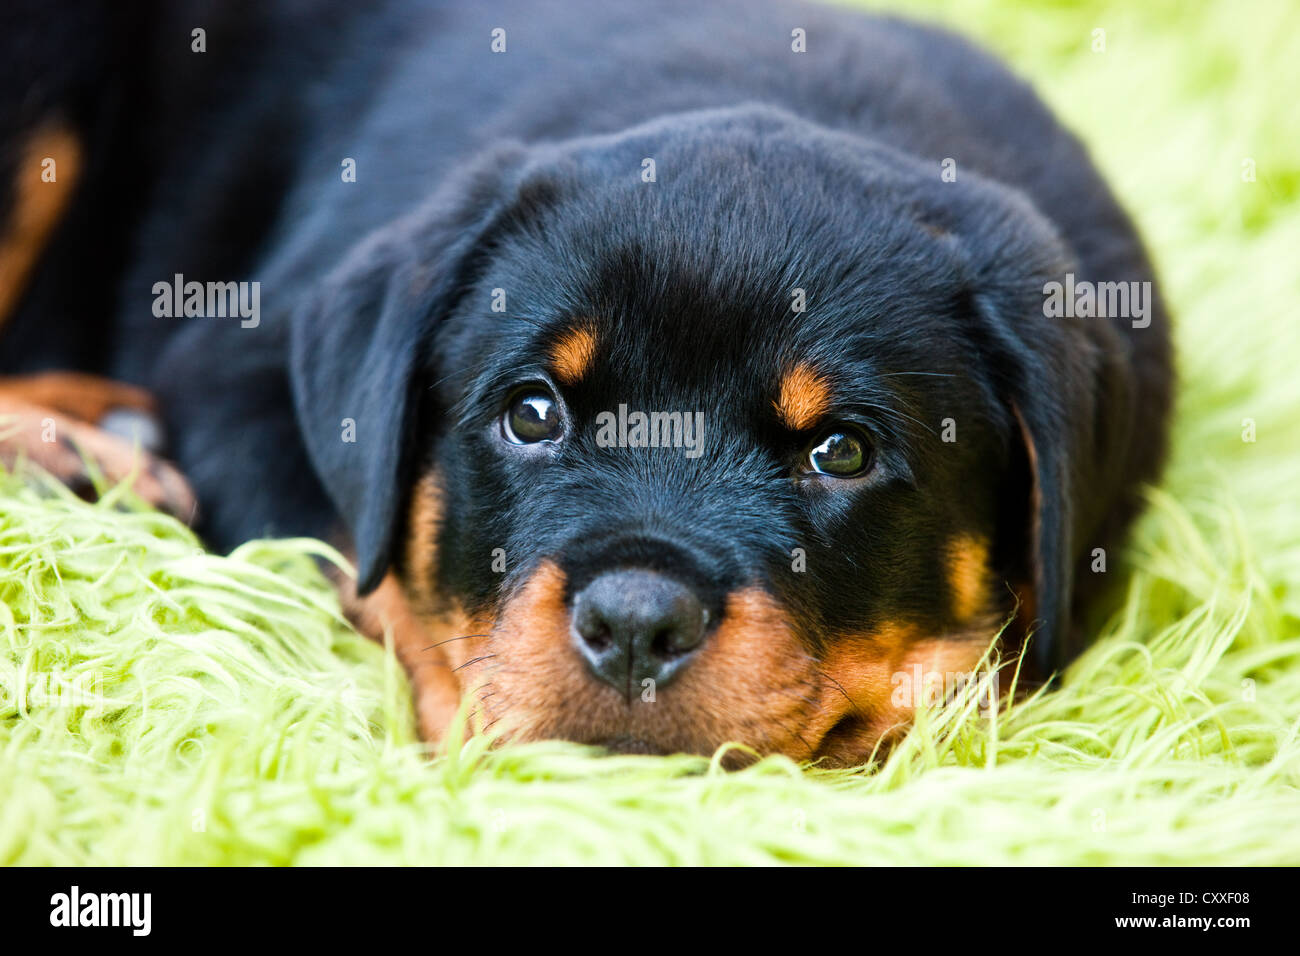 Rottweiler cucciolo di cane giacente in un letto di cane, Tirolo del nord, Austria, Europa Foto Stock